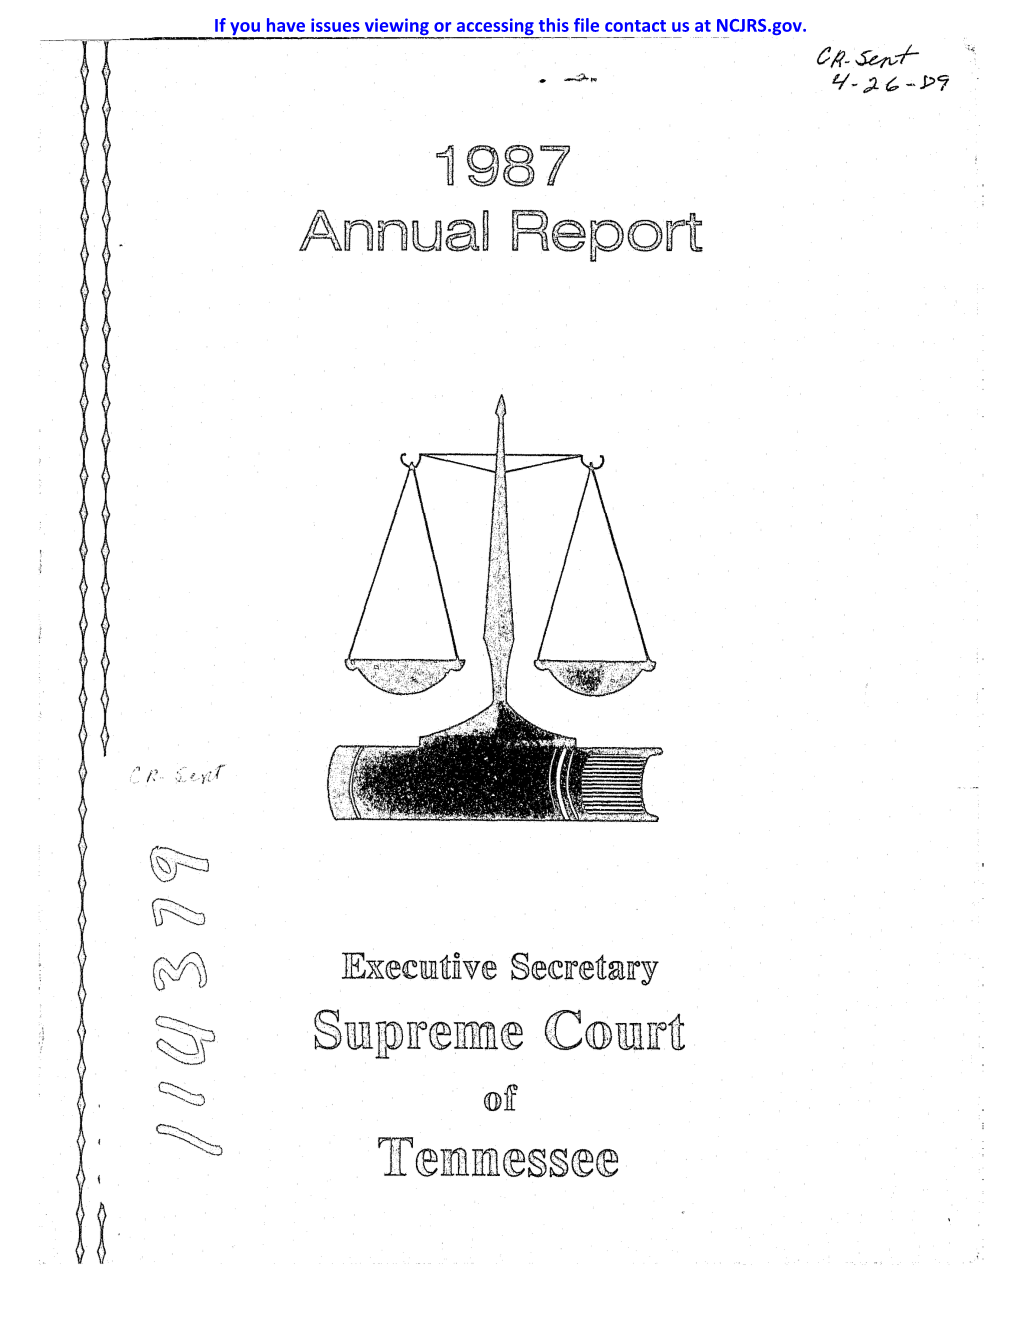 Annuaj Report